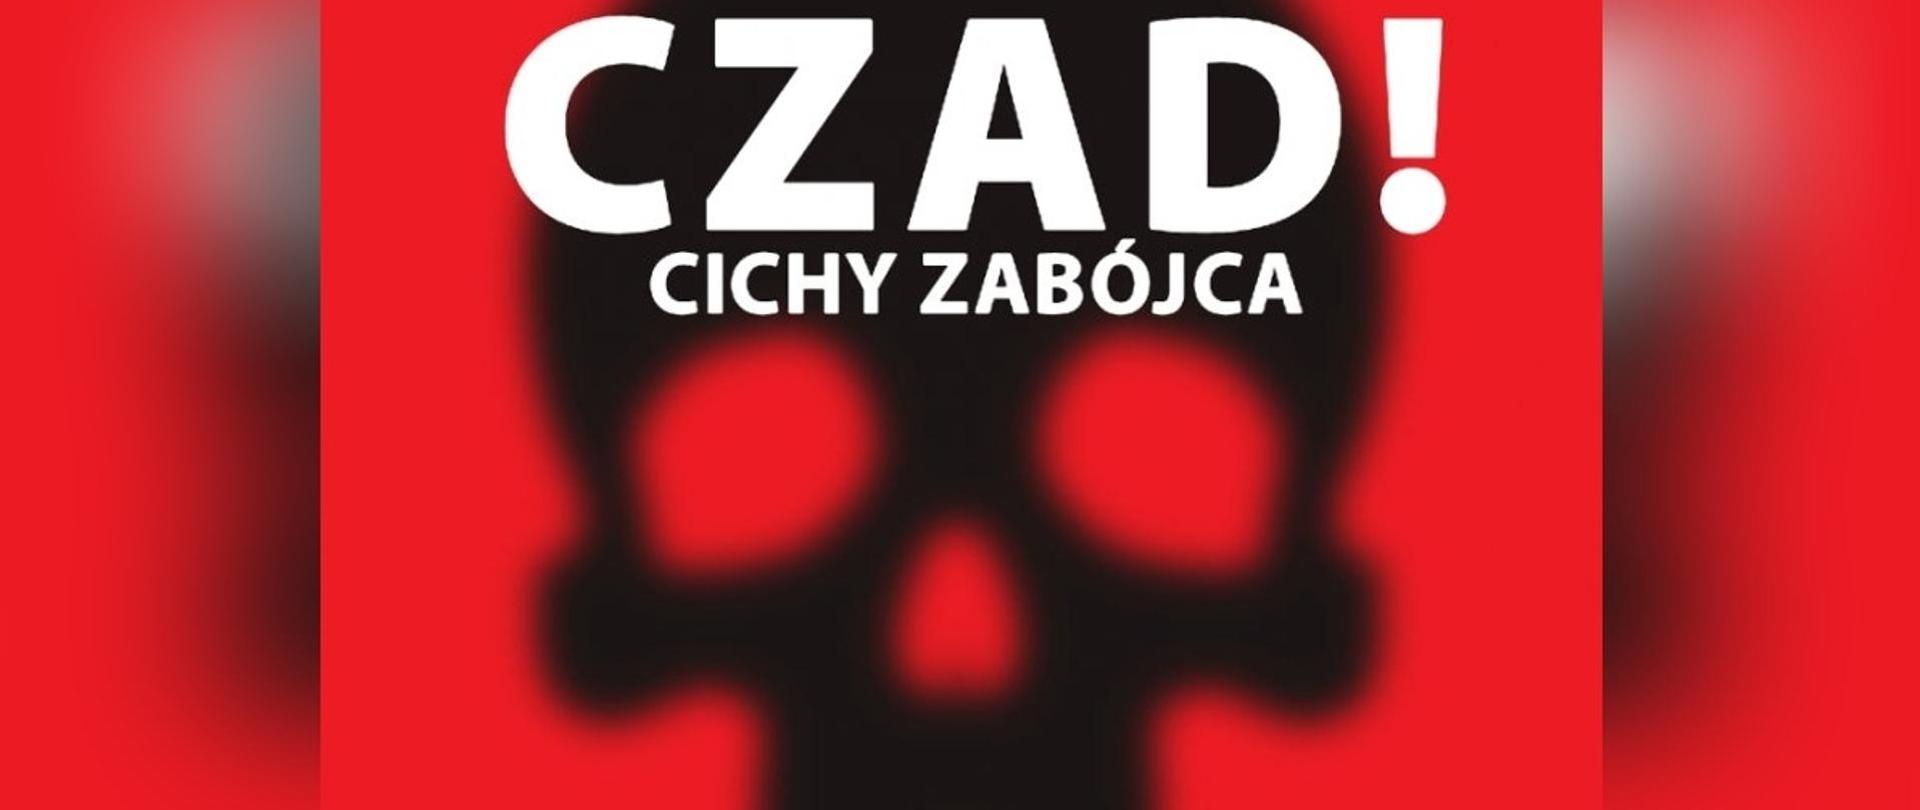 Zdjęcie przedstawia biały napis: "Czad! Cichy zabójca" na czarnym konturze czaszki. Całość jest przedstawiona na czerwonym tle